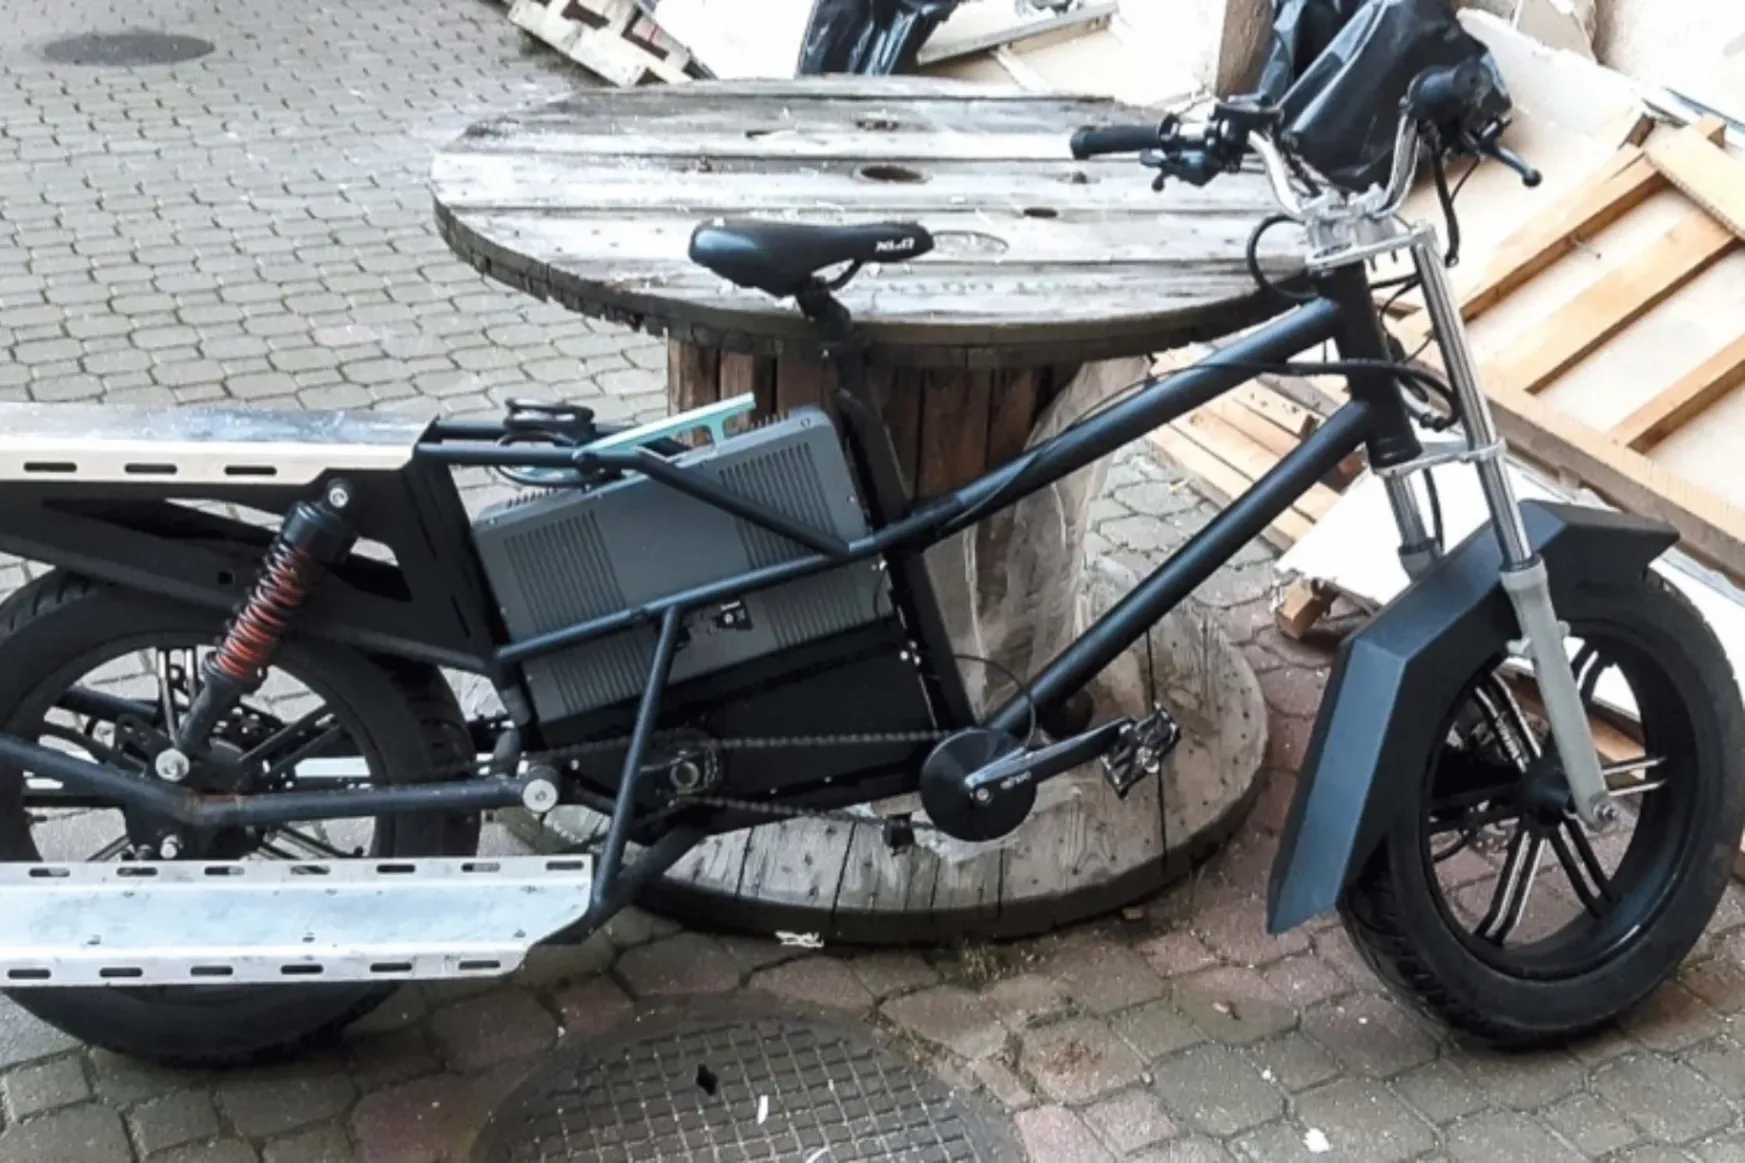 Meglett az ötmilliós elektromos bringa, amit tízezer forintért adott tovább a tolvaj